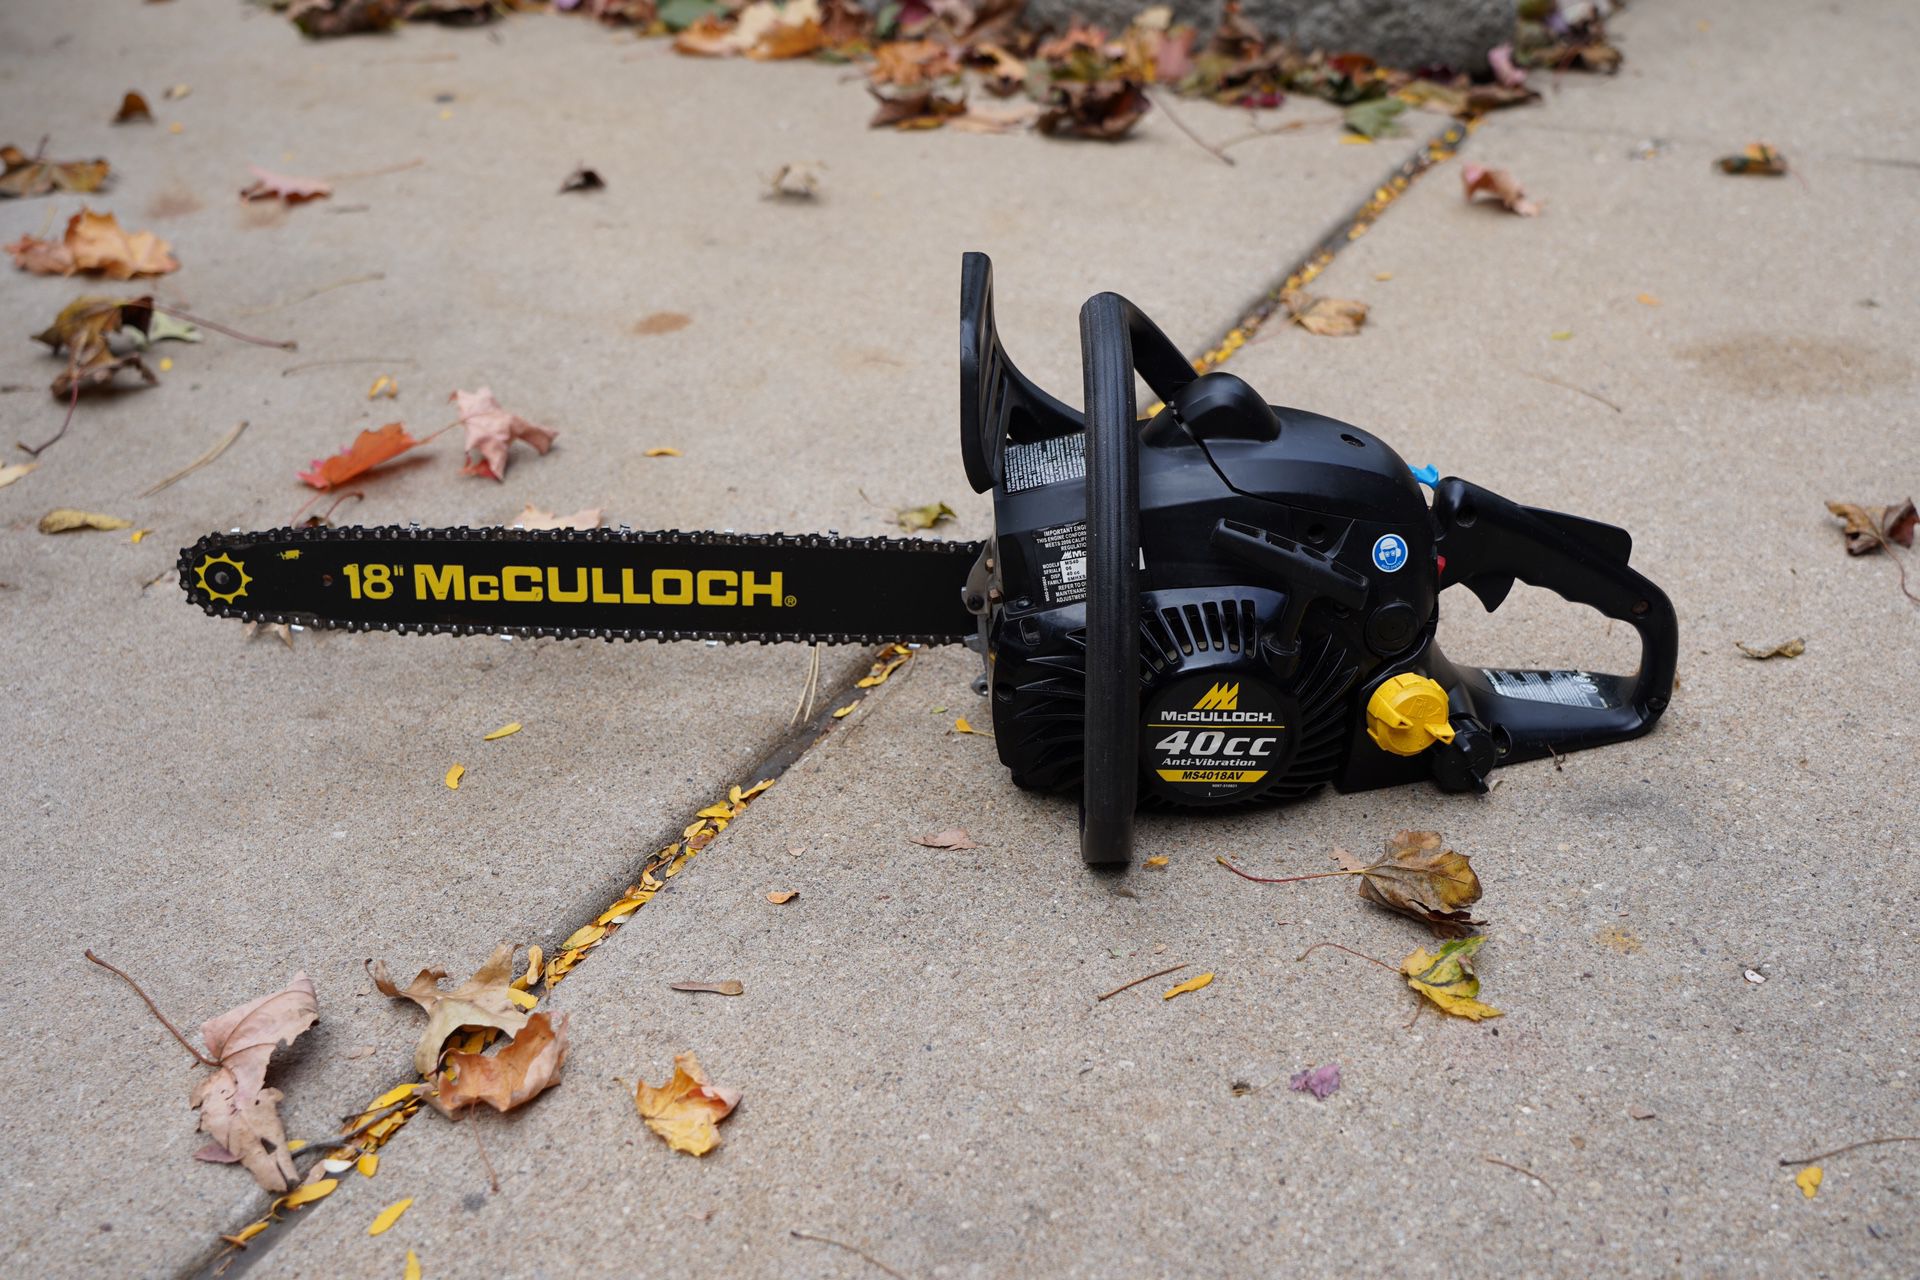 18” McCulloch 40cc chainsaw